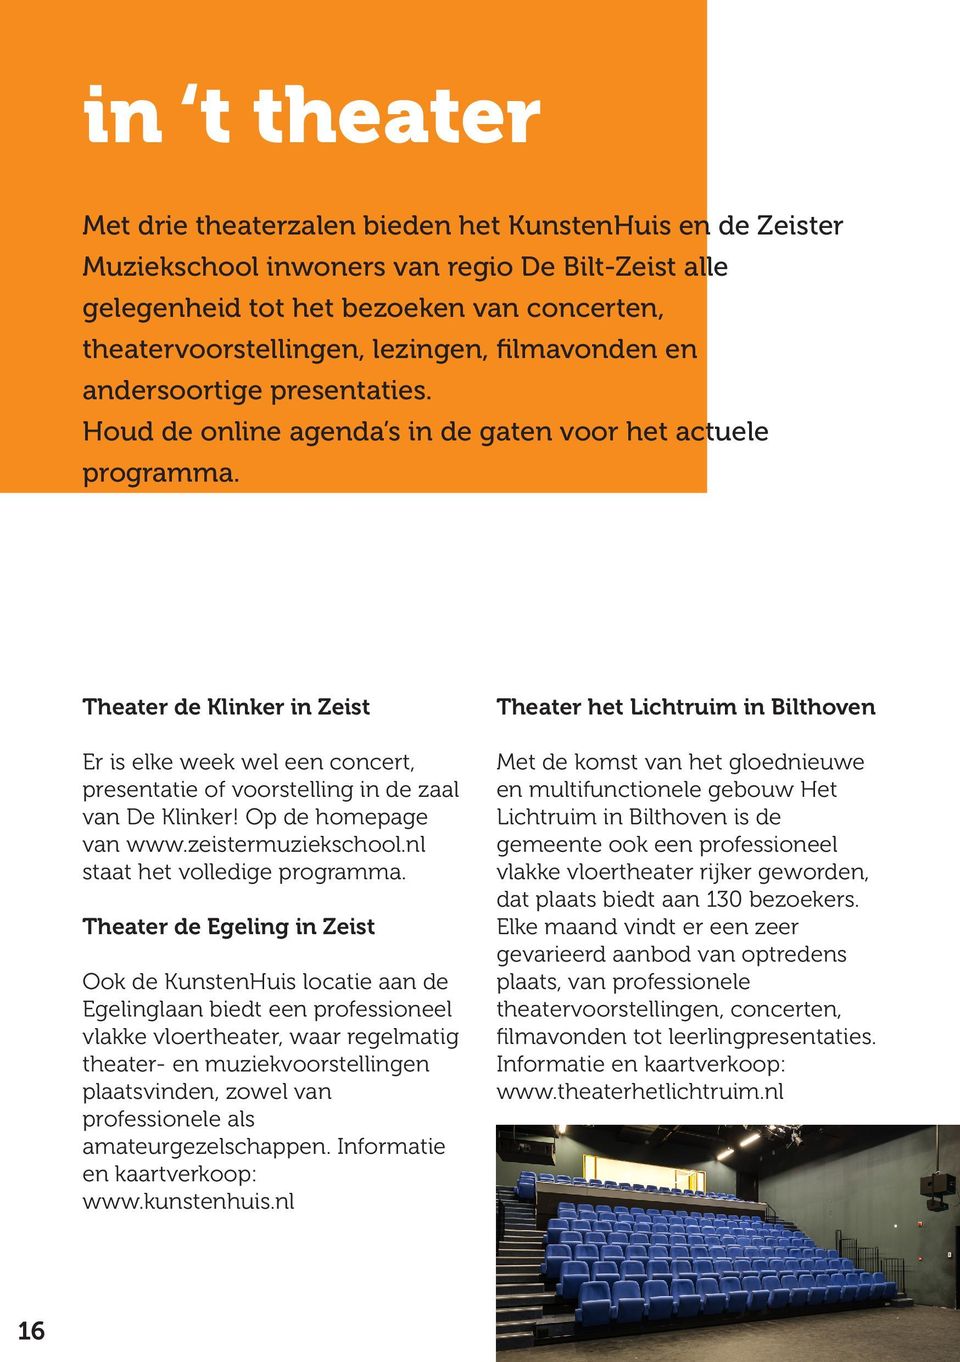 Theater de Klinker in Zeist Er is elke week wel een concert, presentatie of voorstelling in de zaal van De Klinker! Op de homepage van www.zeistermuziekschool.nl staat het volledige programma.